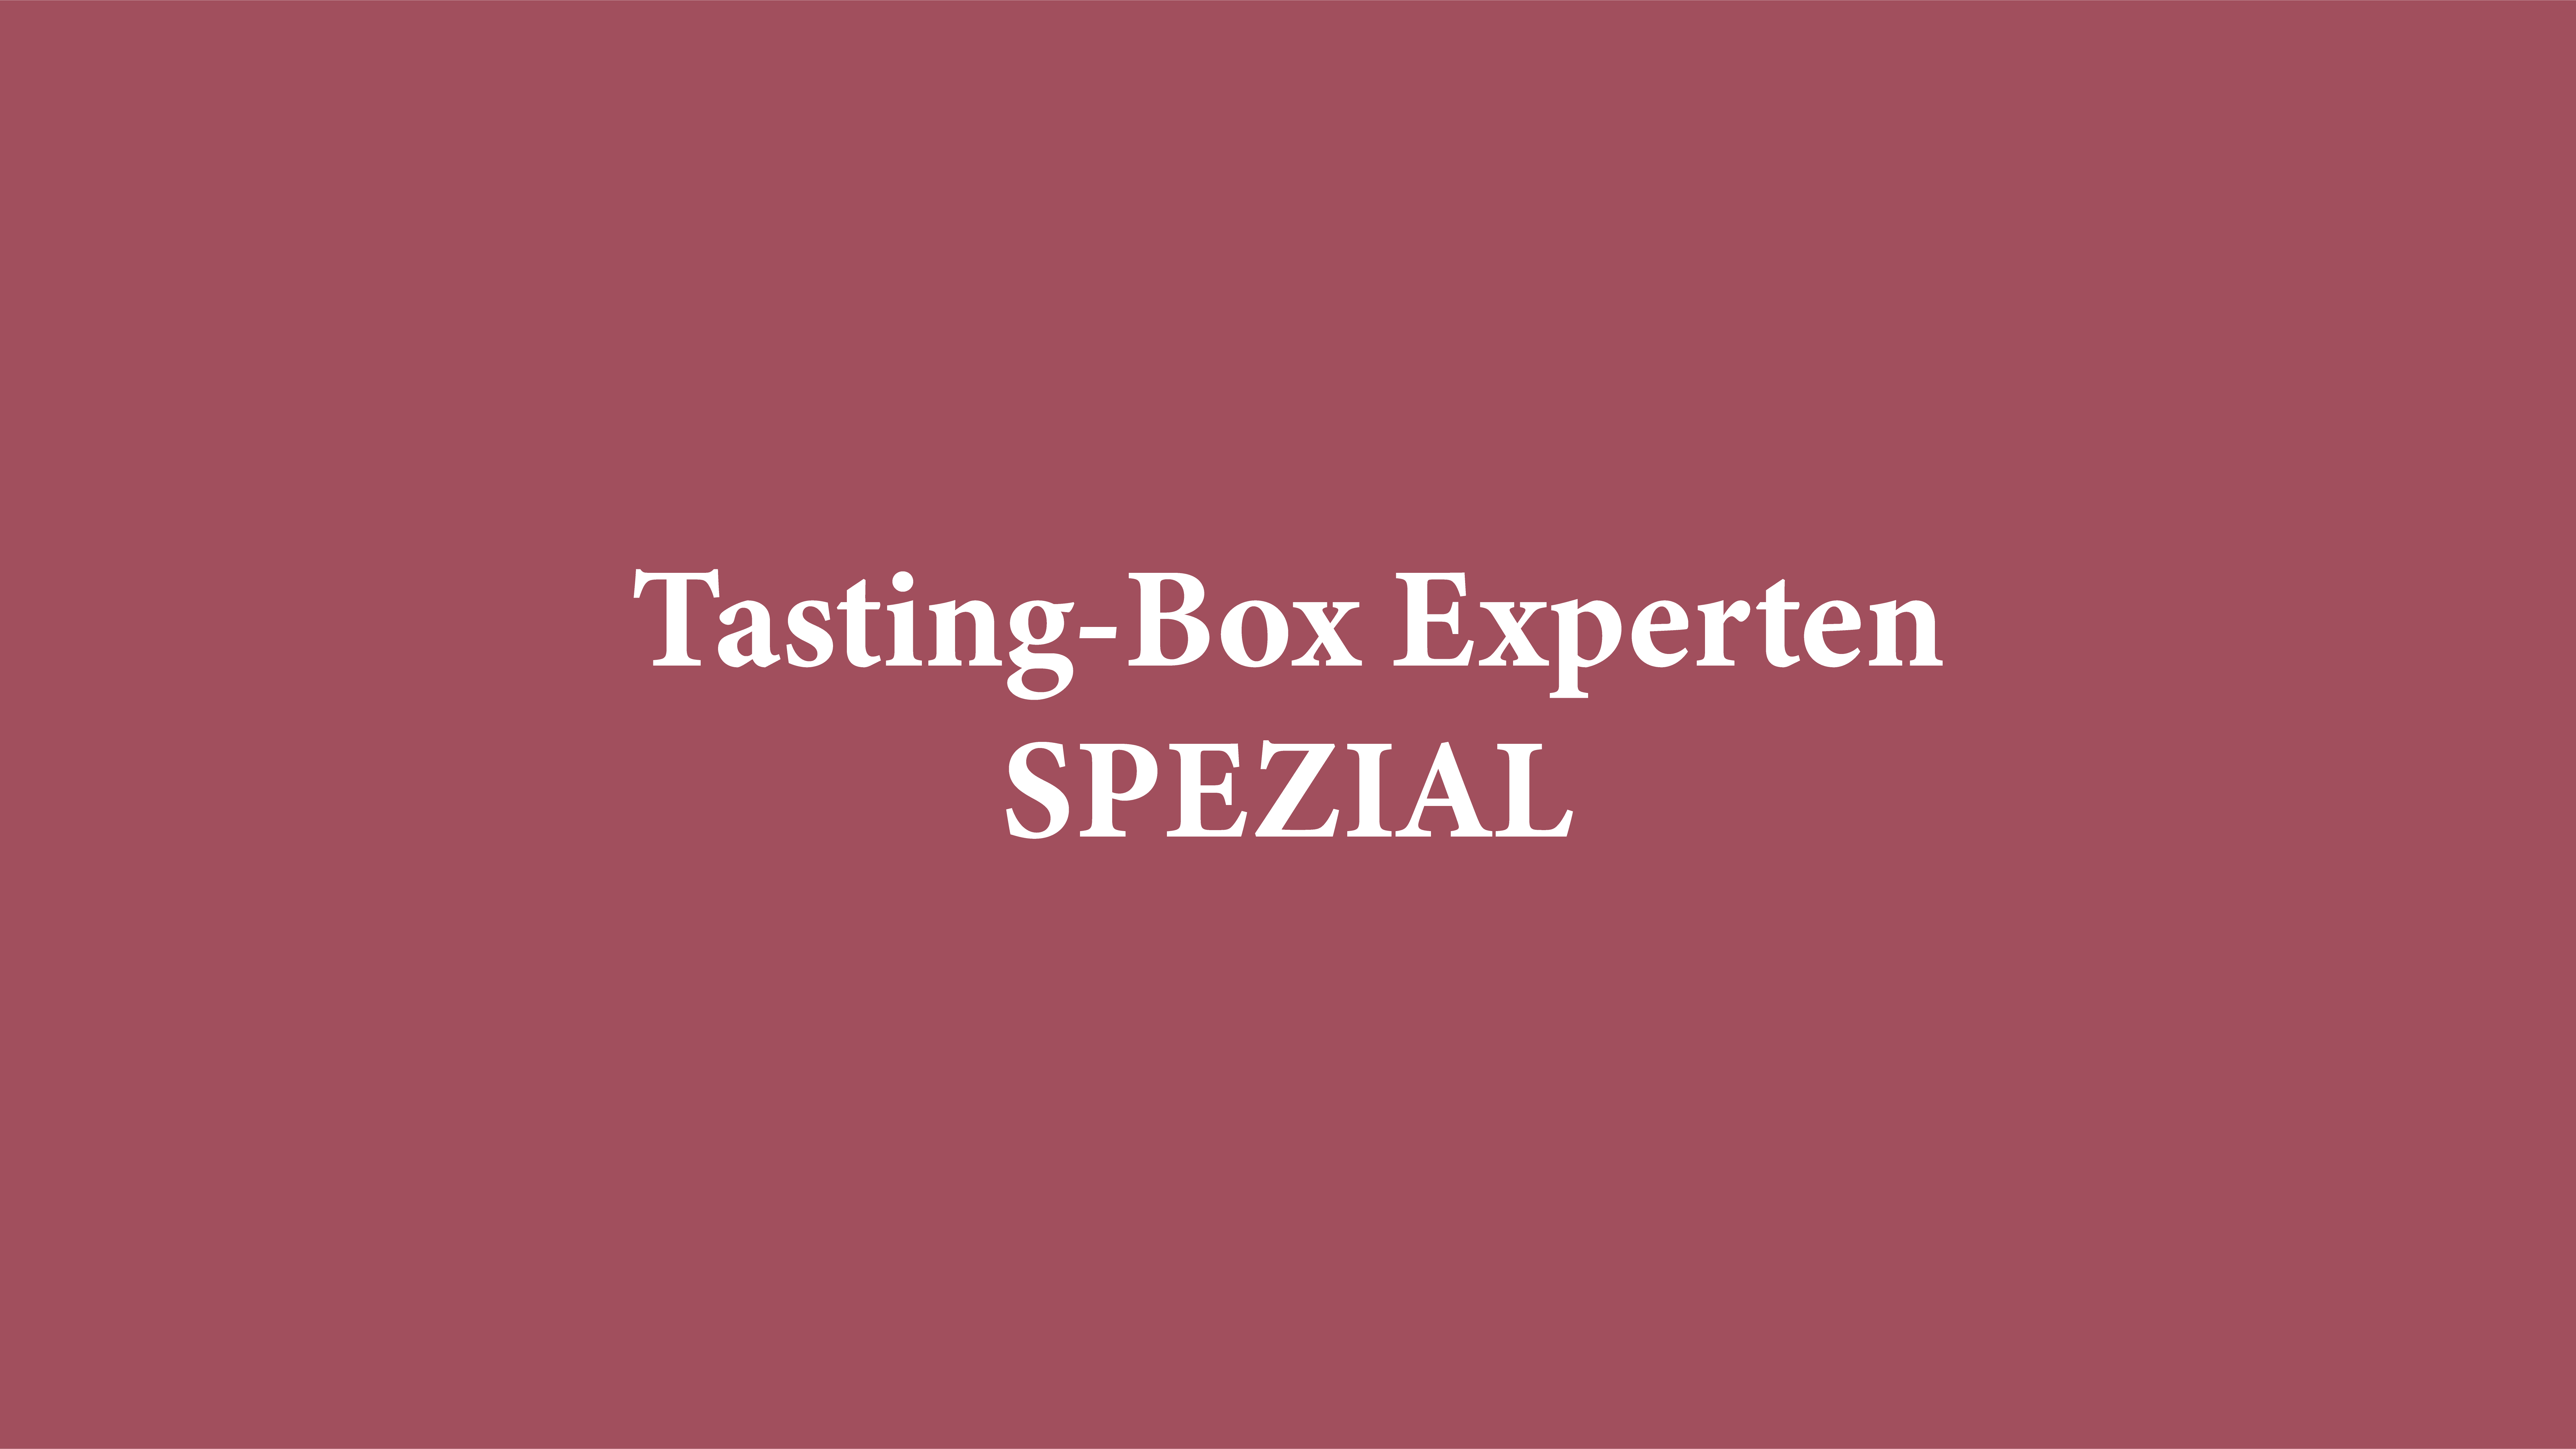 Jetzt anmelden zum 19.10., 16:00 Uhr zum Auftakt des Tasting Box-Experten SPEZIAL